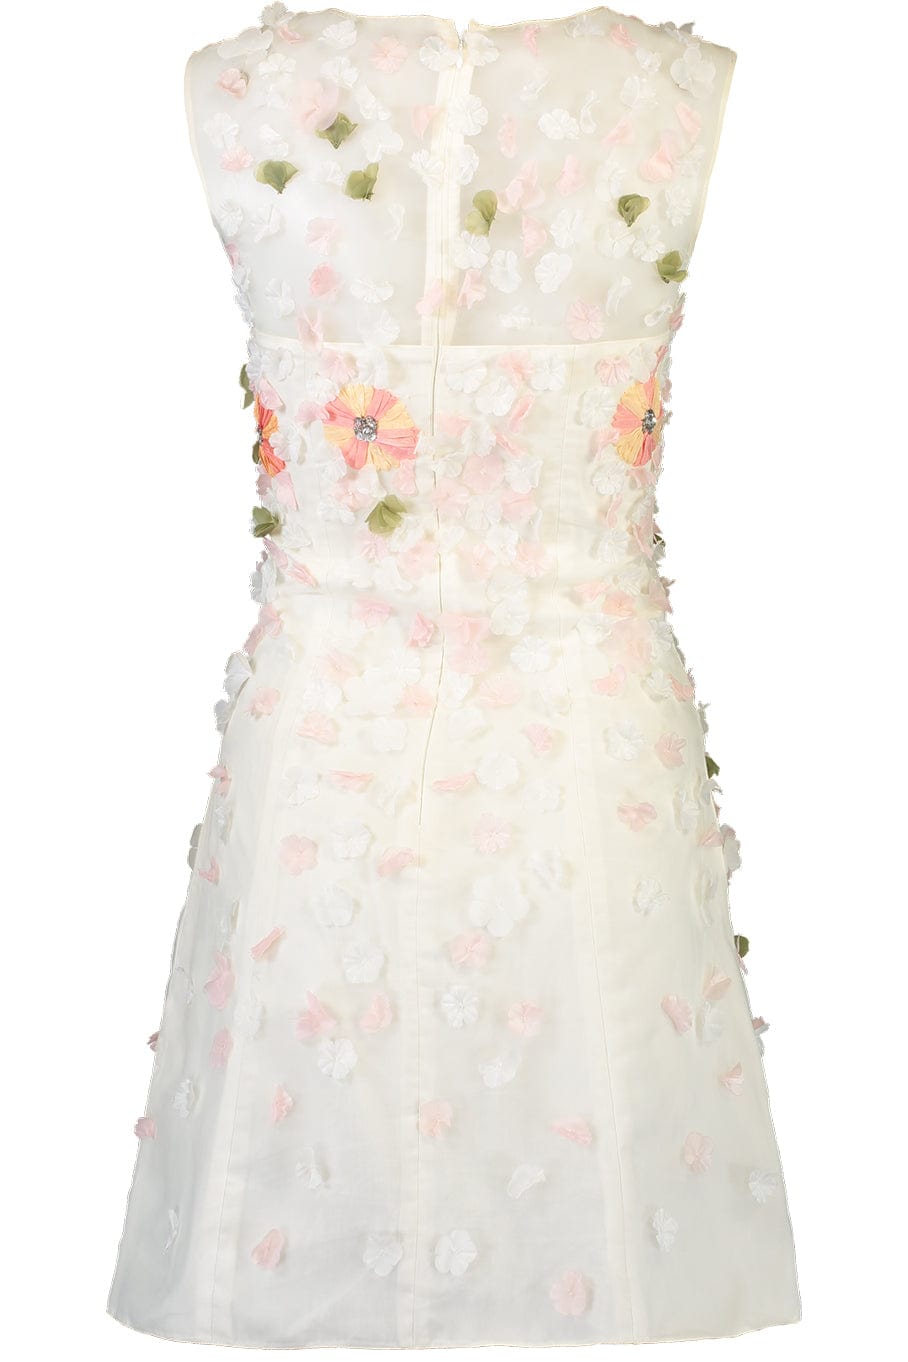 BLUGIRL-Floral Cocktail Dress-IVORY